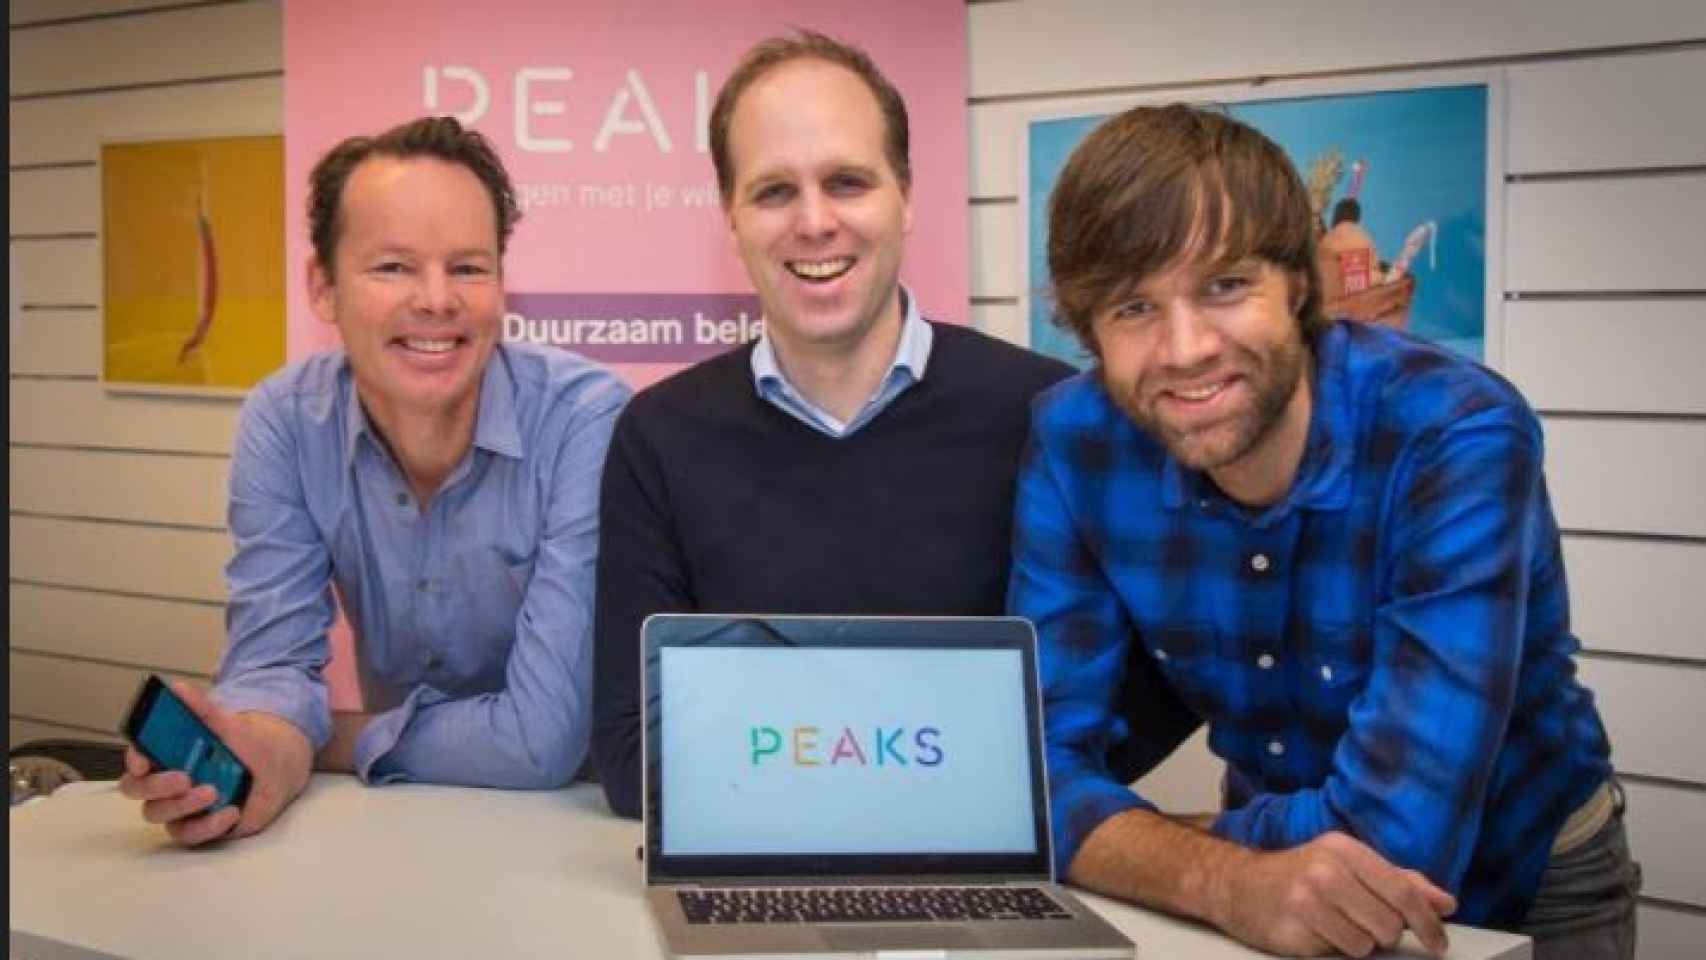 De izquierda a derecha, Sijbrand Tieleman, Tom Arends y Rutger Beens, fundadores de Peaks.